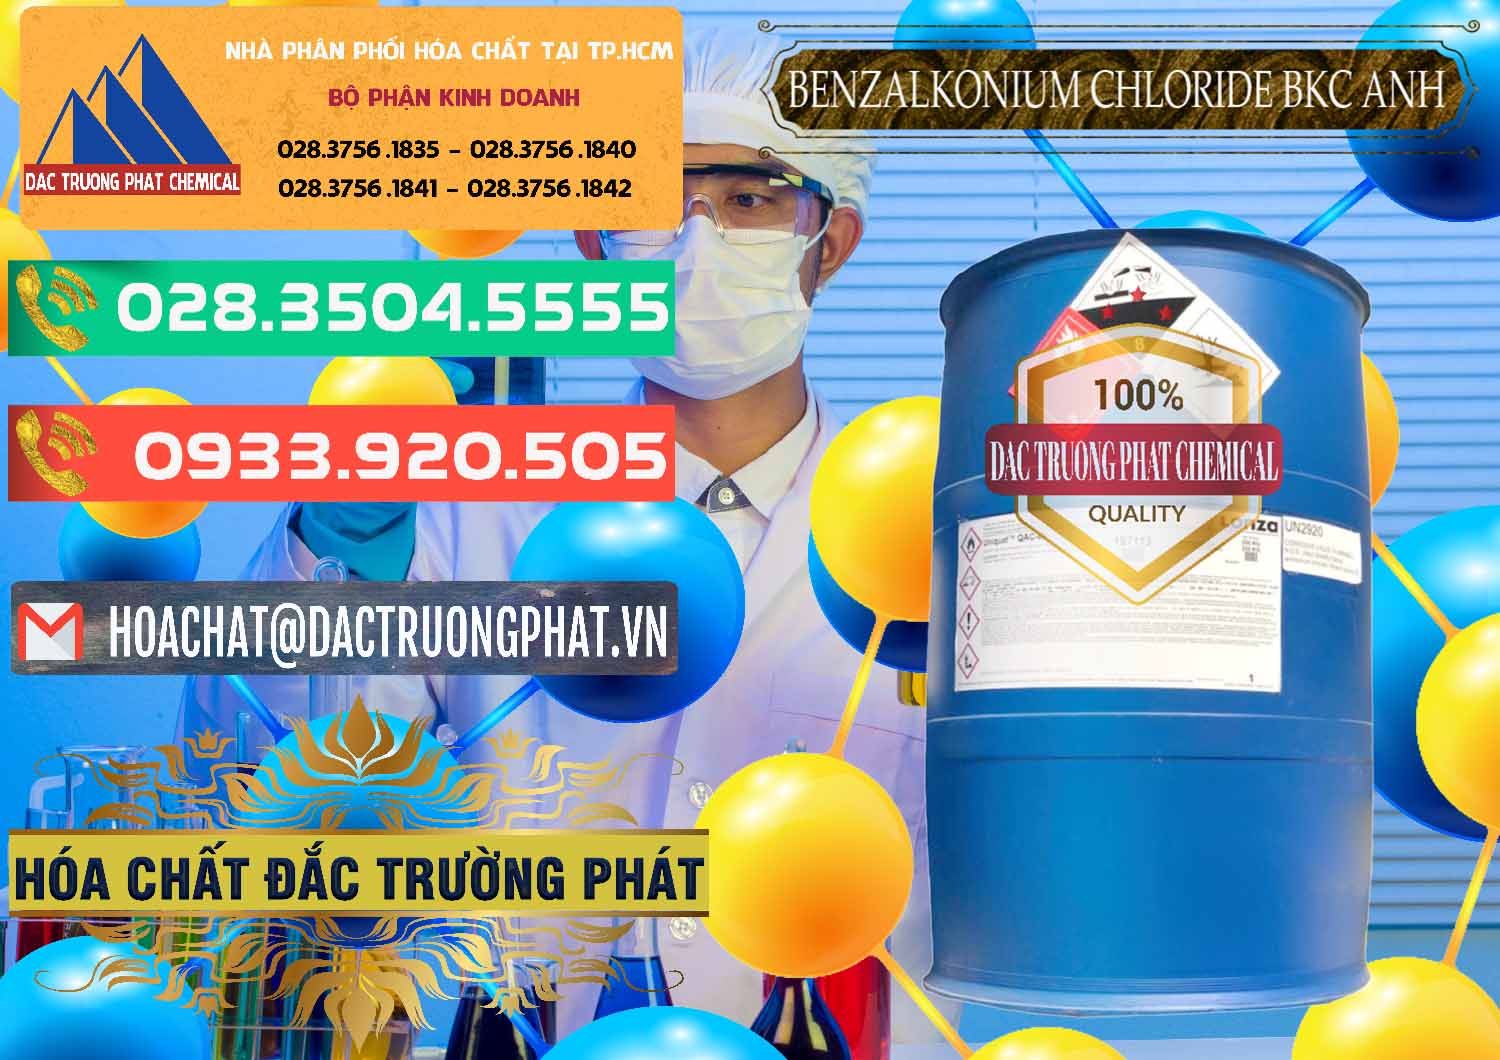 Nơi chuyên phân phối _ bán BKC - Benzalkonium Chloride 80% Anh Quốc Uk Kingdoms - 0457 - Cty chuyên nhập khẩu và cung cấp hóa chất tại TP.HCM - congtyhoachat.com.vn